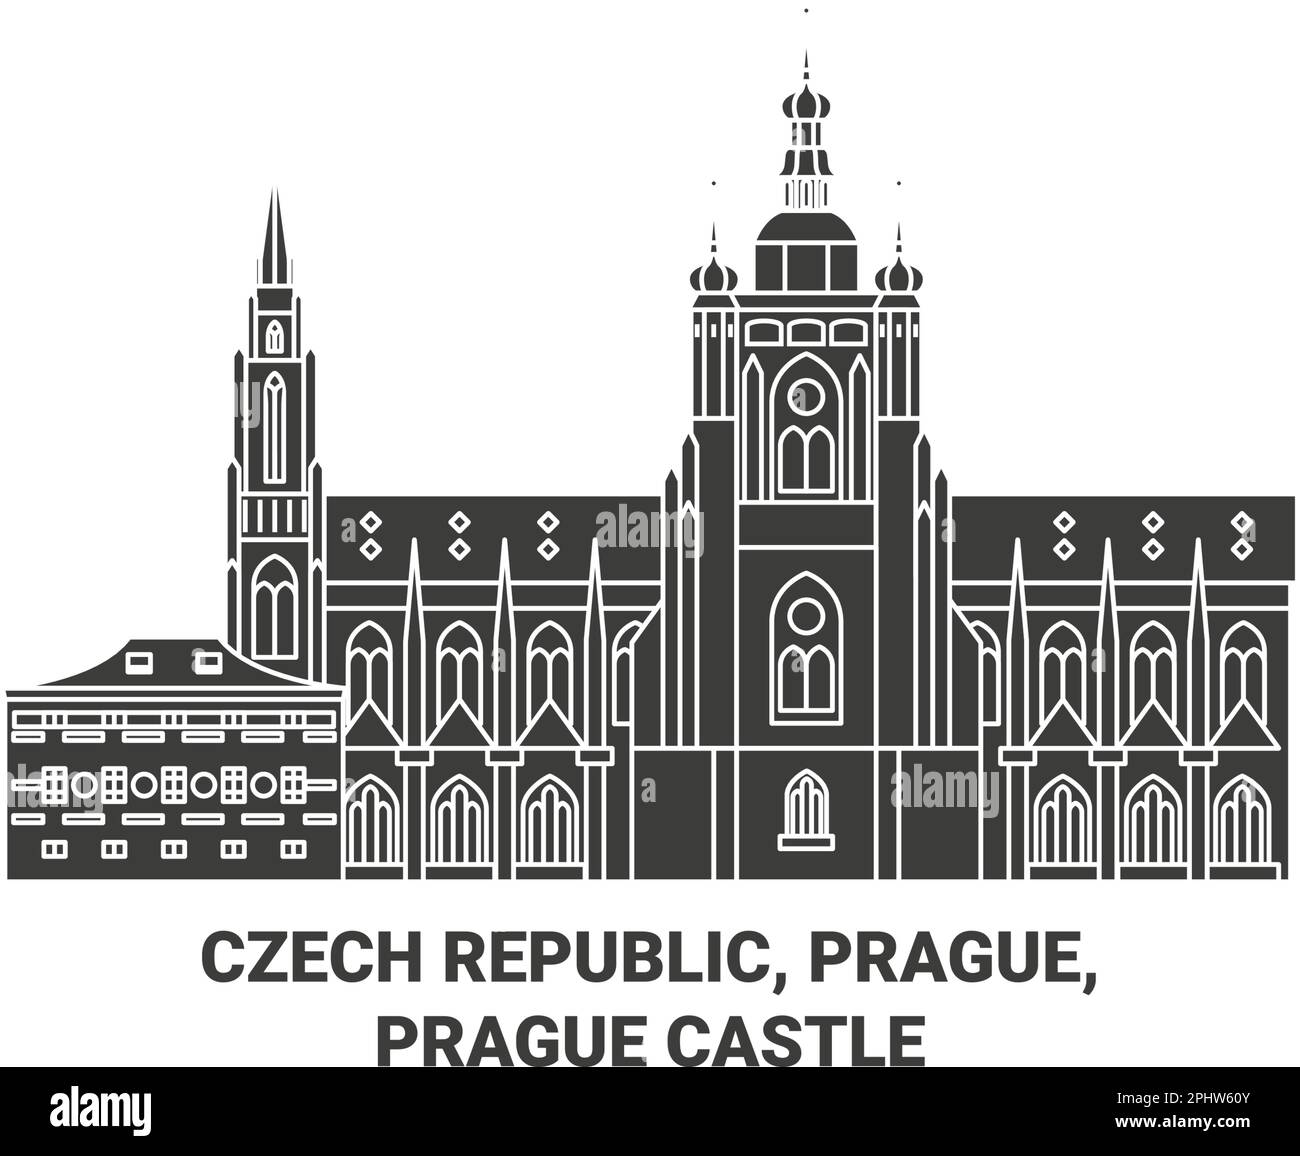 Tschechische Republik, Prag, Prager Burg Reise Wahrzeichen Vektordarstellung Stock Vektor